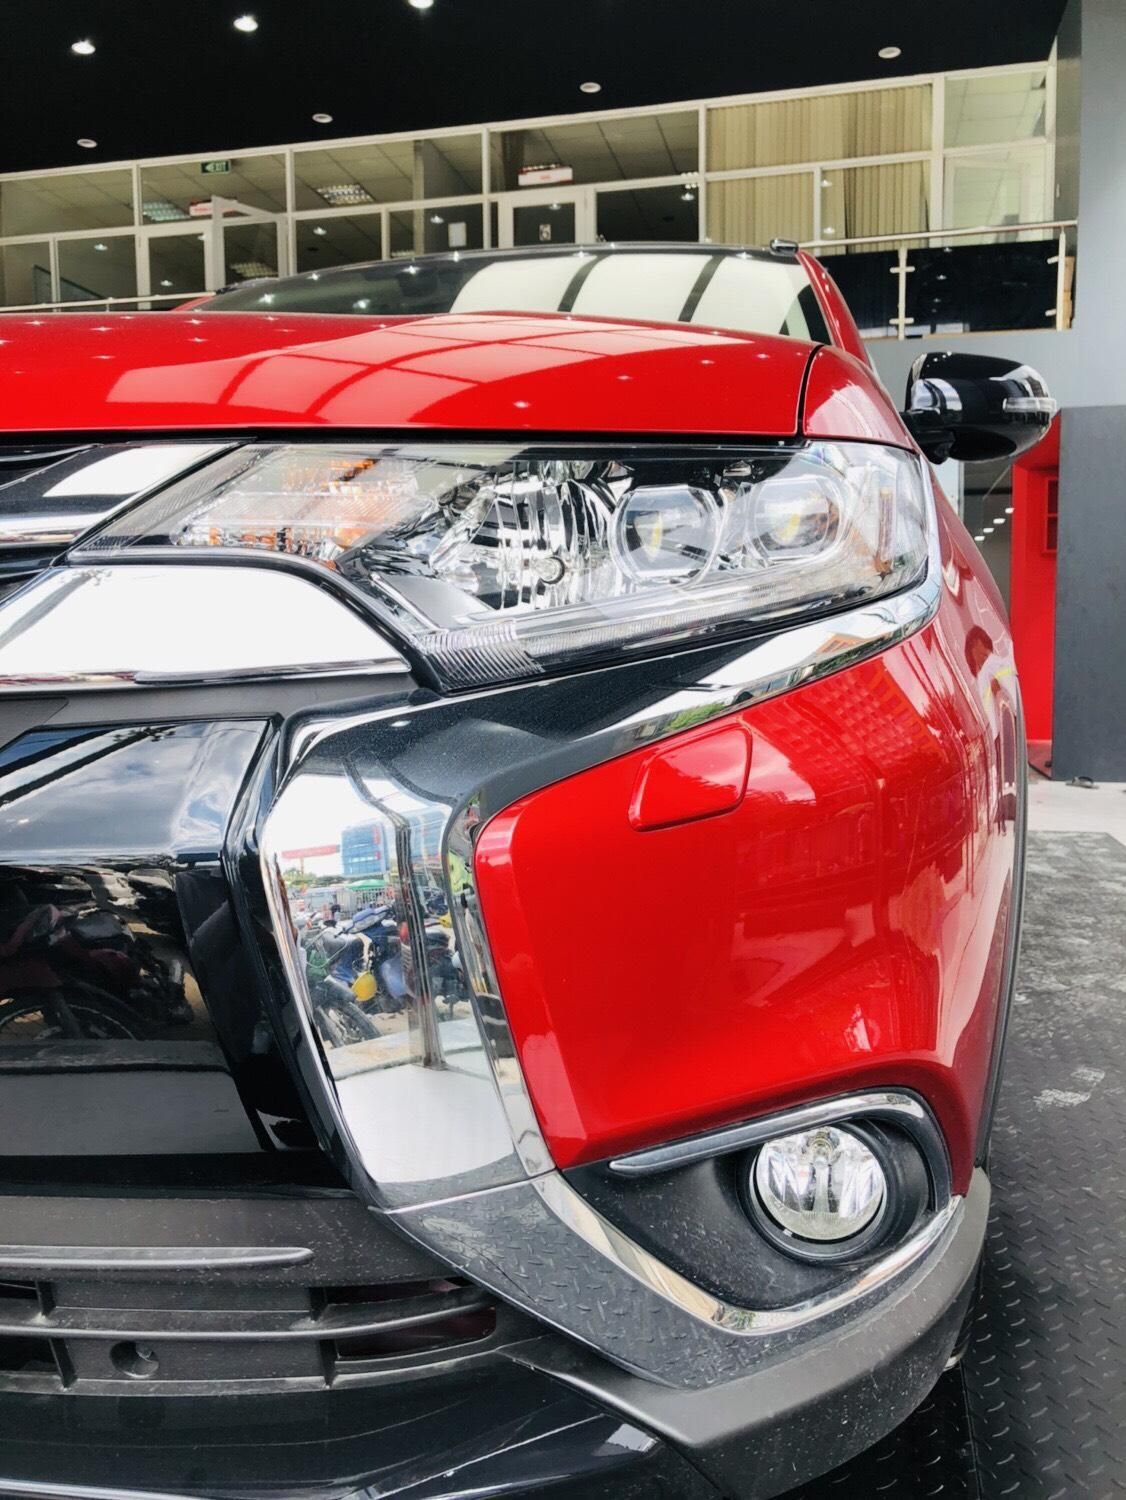 Mitsubishi Outlander Sport 2019 - Bán nhanh chiếc xe Mitsubishi Outlander Sport đời 2019, màu đỏ, hỗ trợ 50% thuế trước bạ